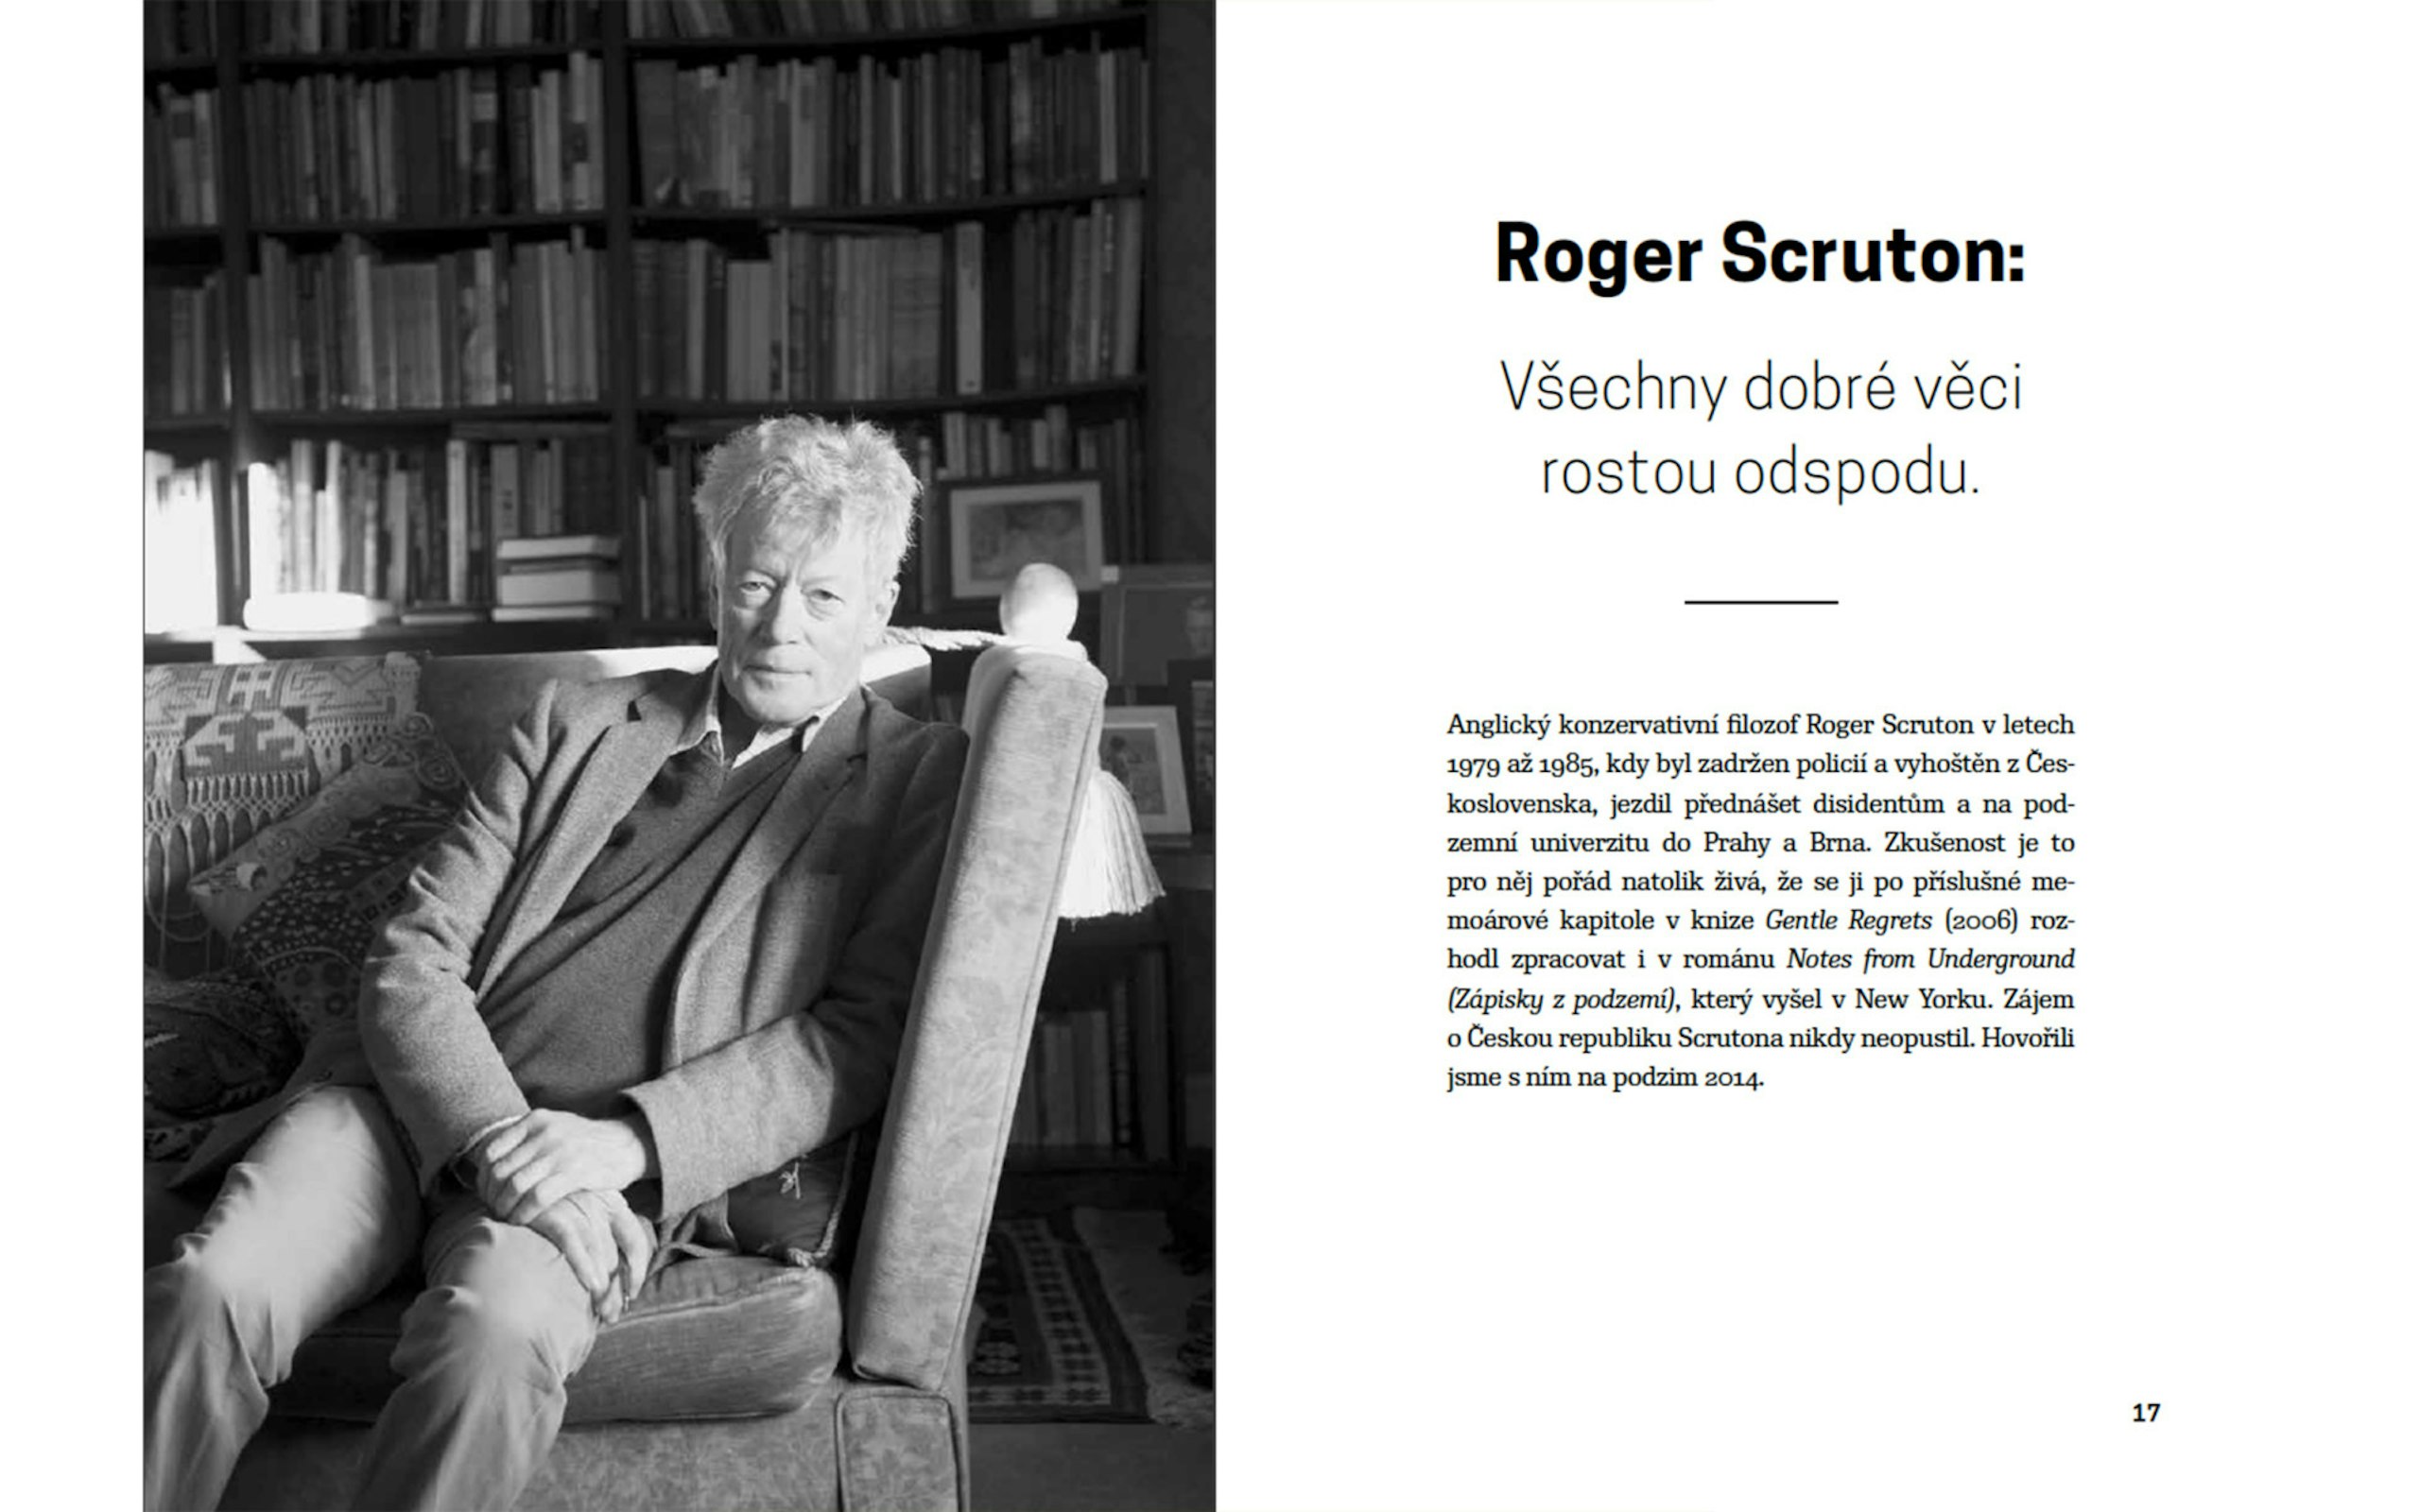 Titulní dvojstrana rozhovoru s Rogerem Scrutonem v knize Proměny světa